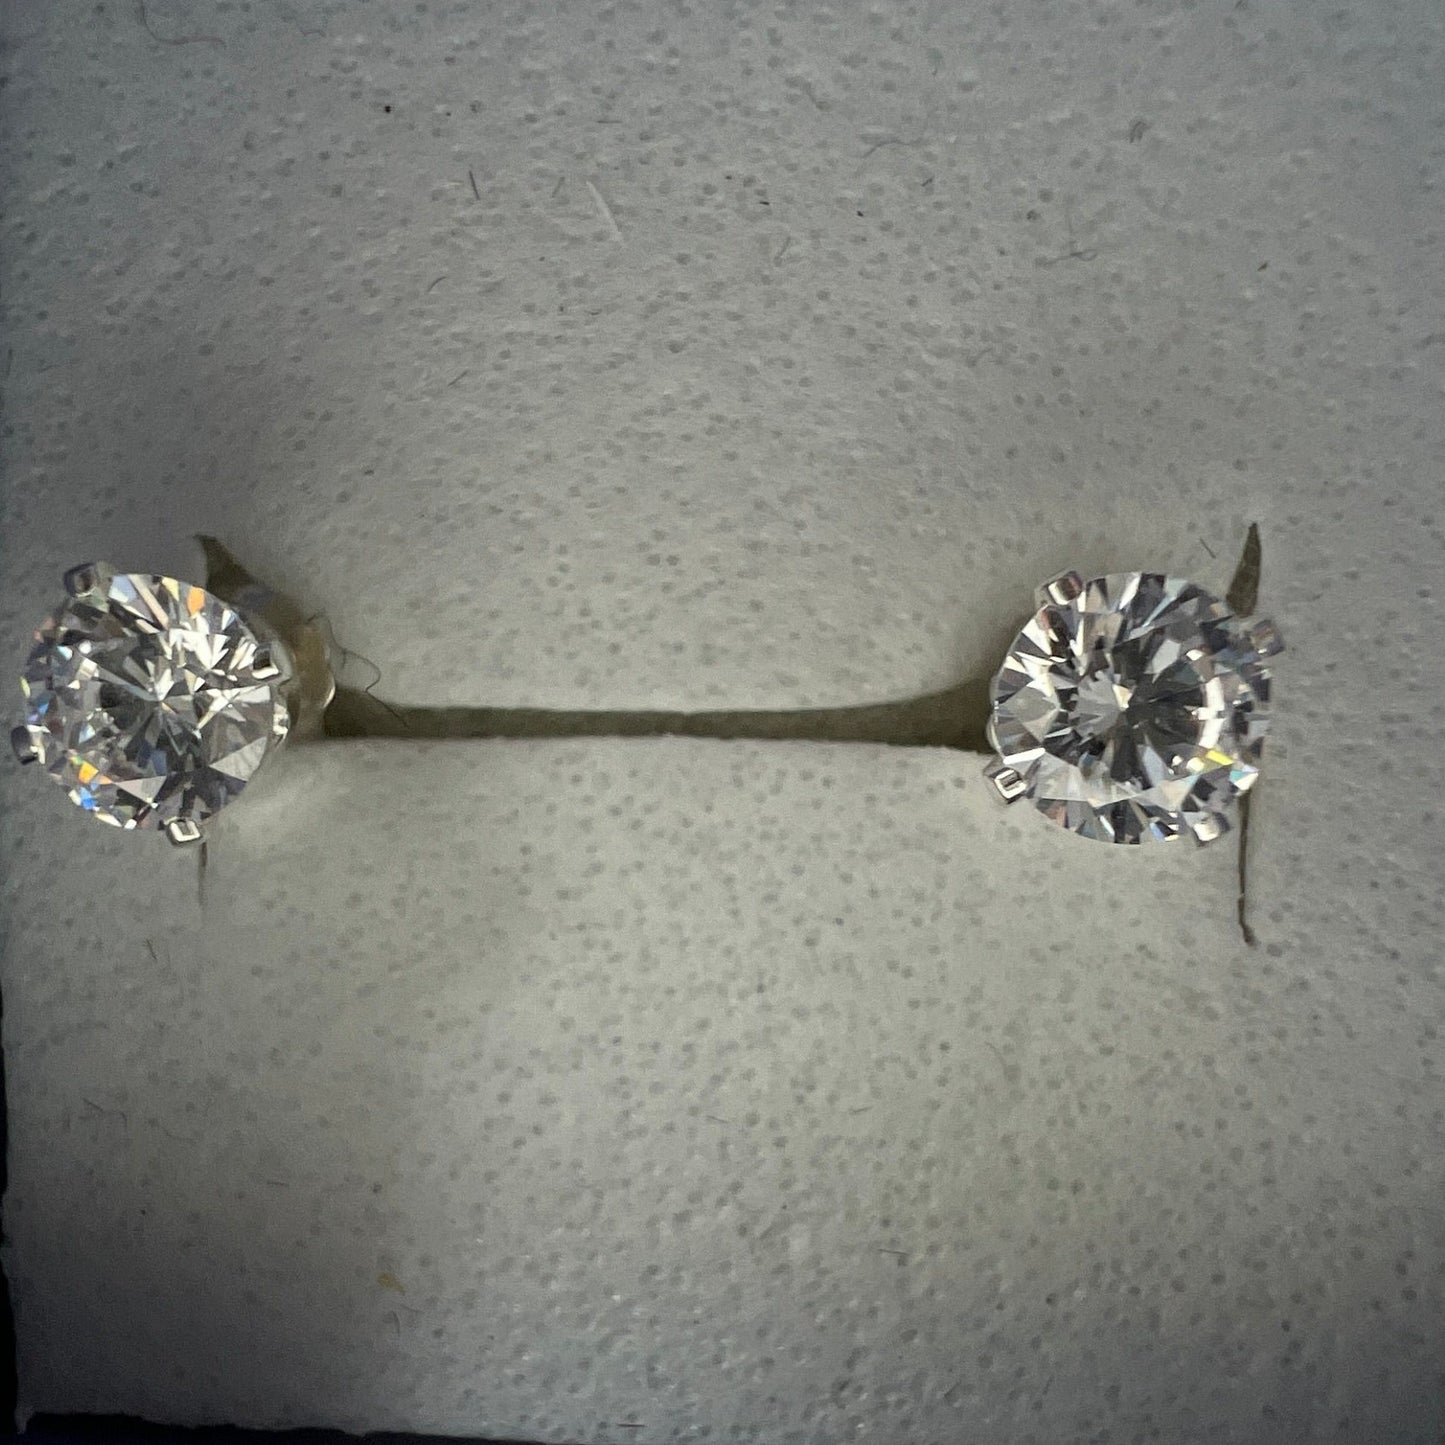 5mm CZ on sterling silver stud earrings